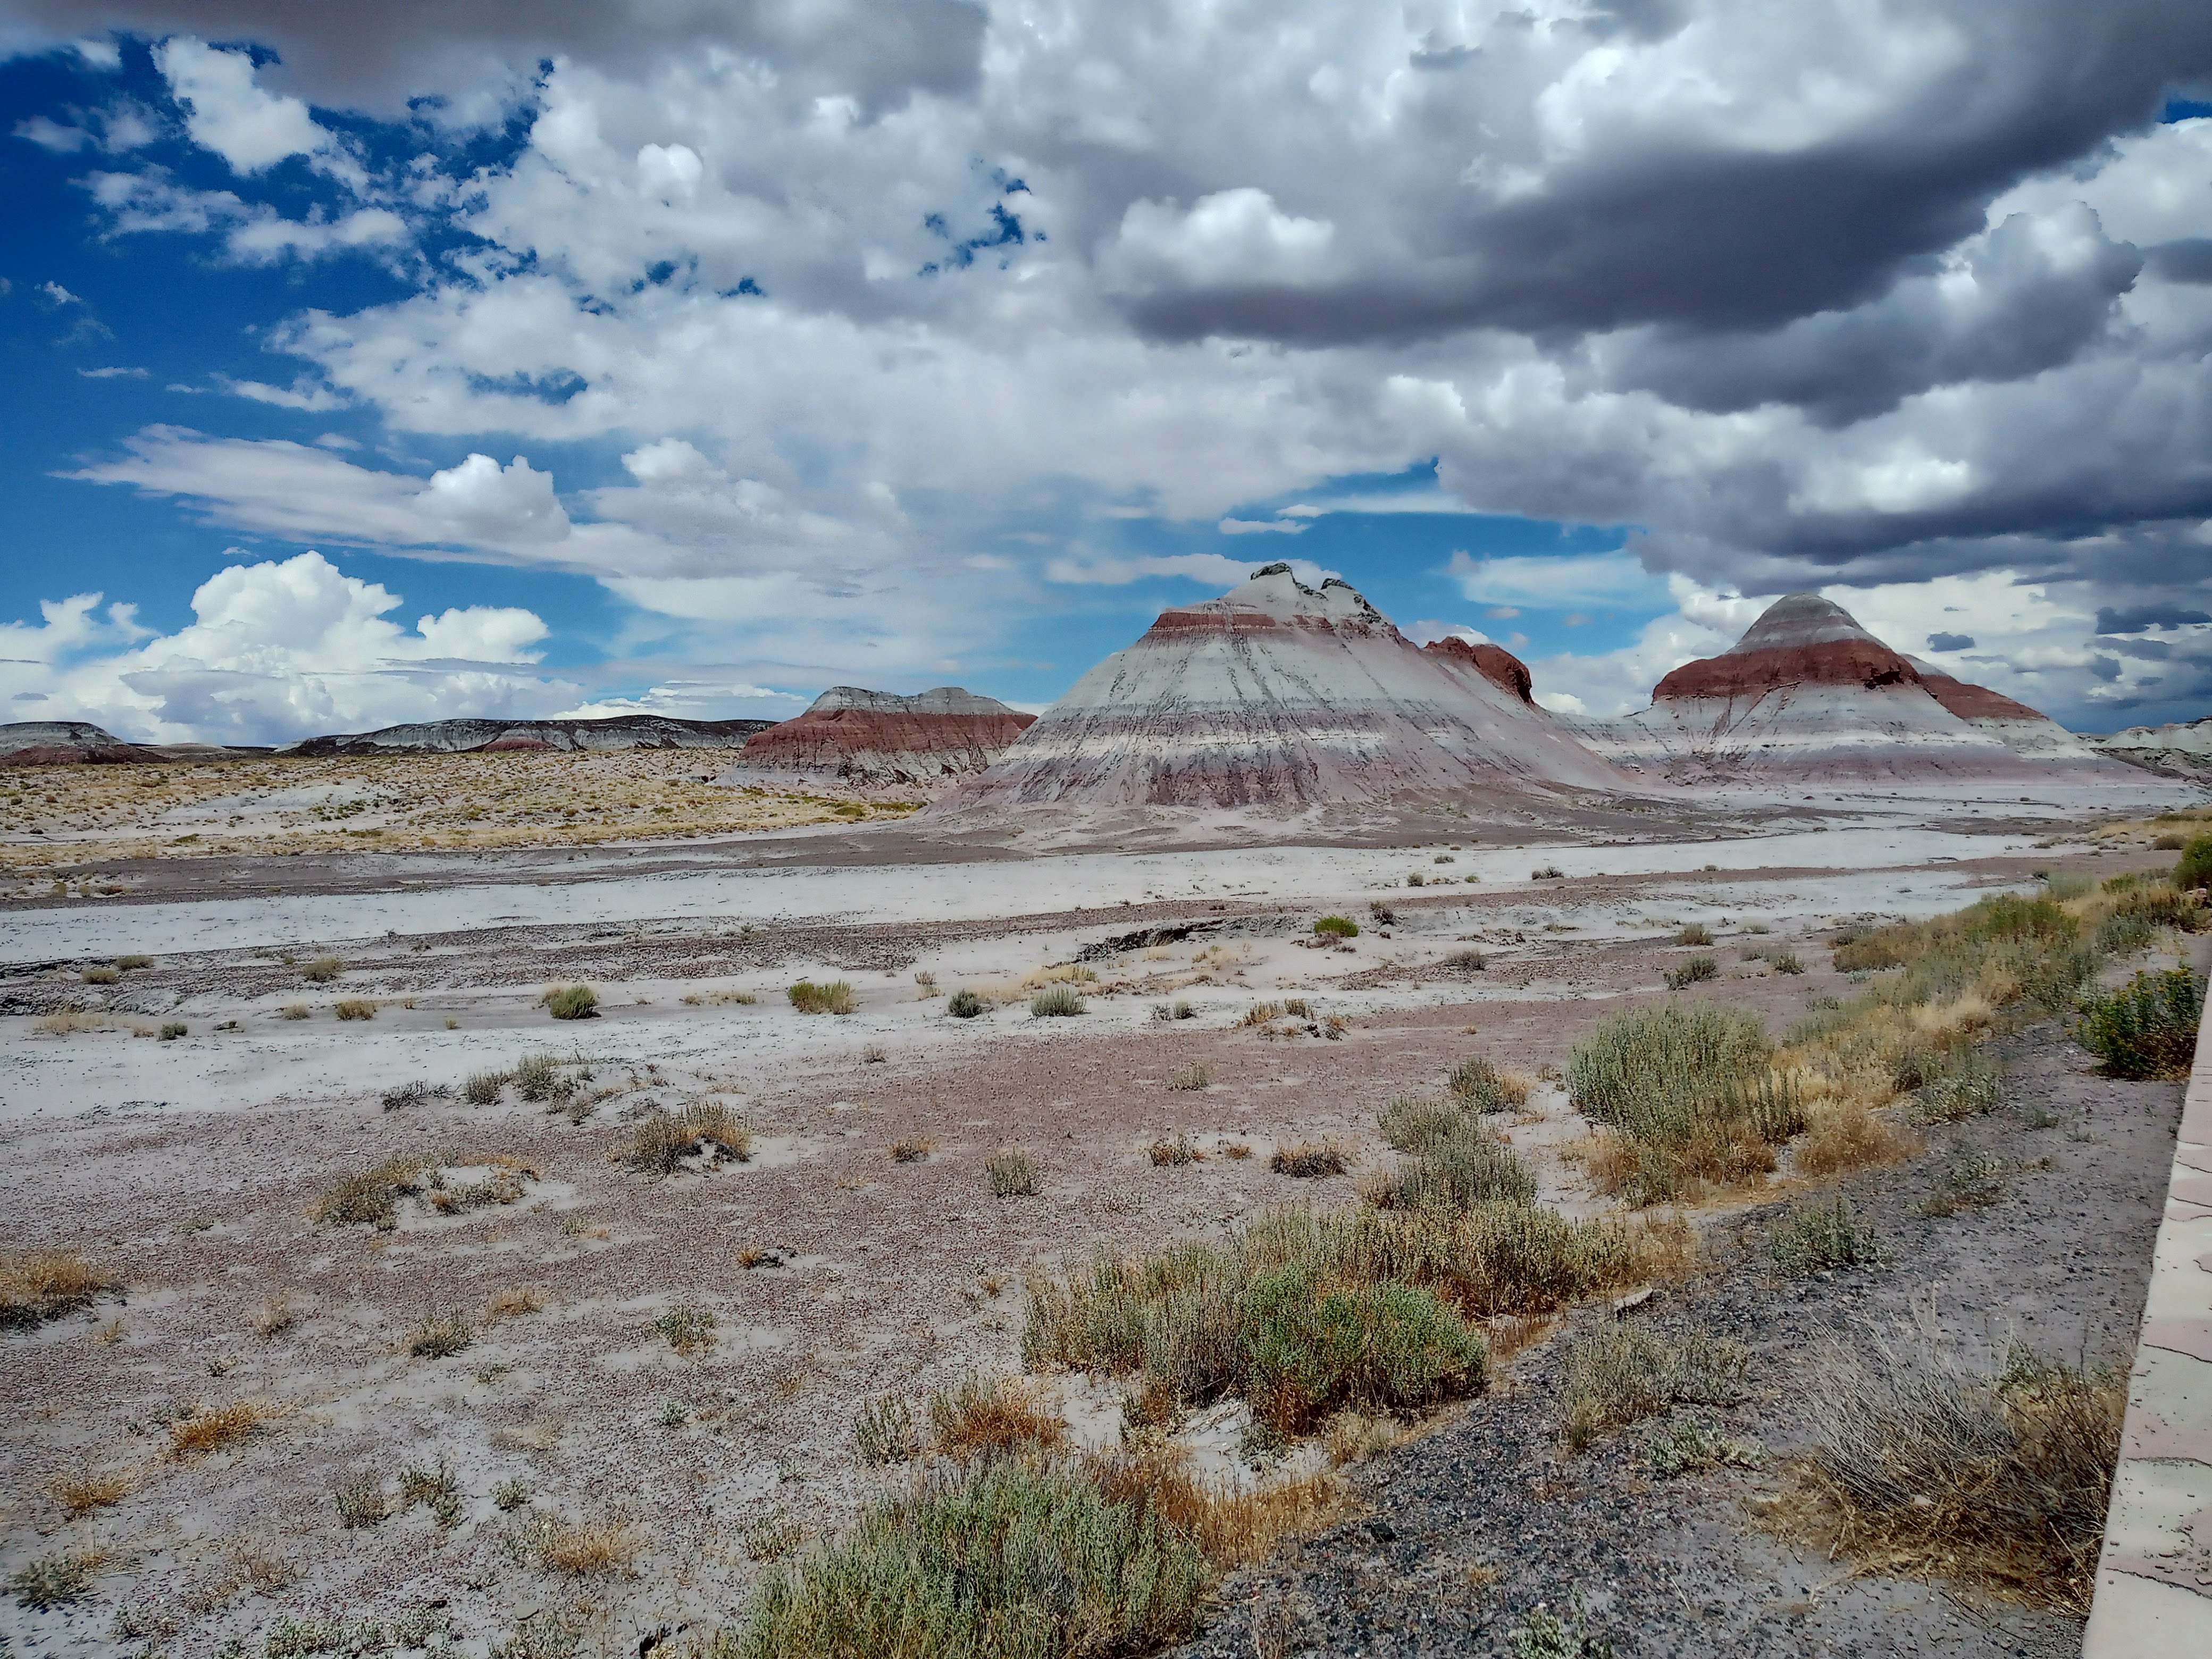 Image of the Painted Desert, Arizona